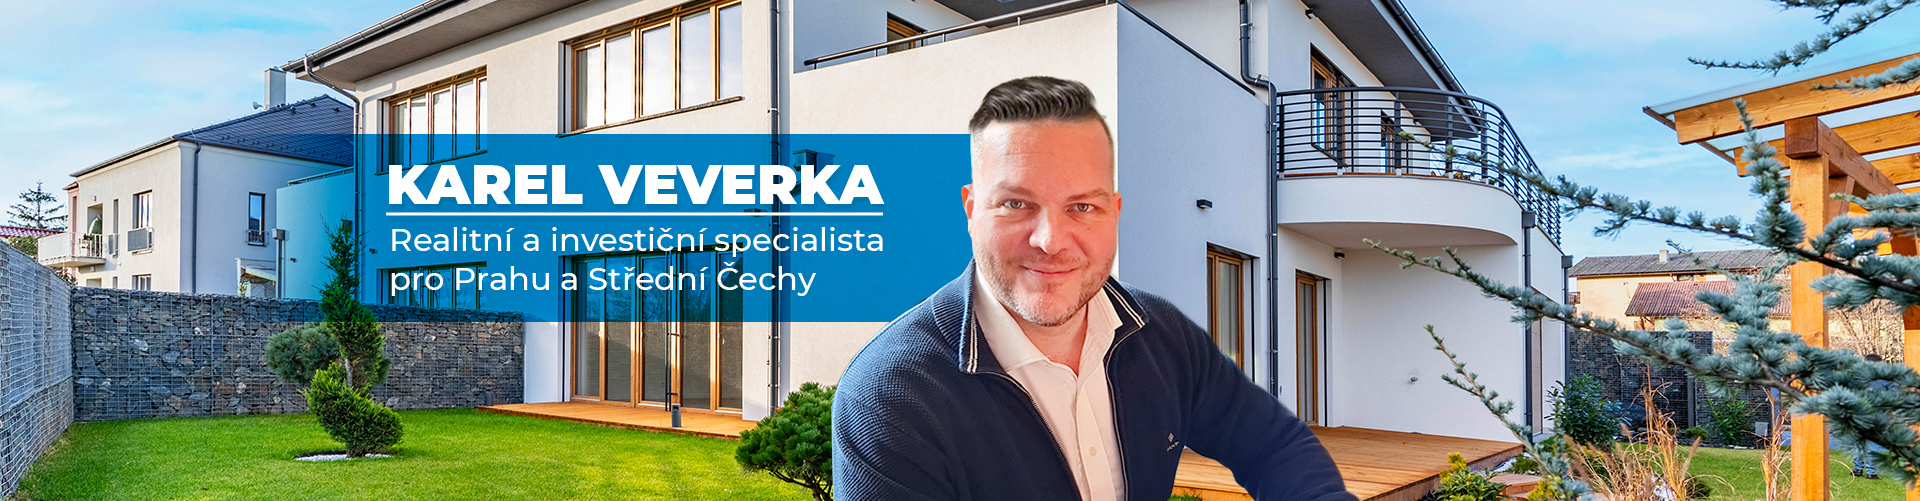 Realitní a investiční specialista Praha, Střední Čechy - Karel Veverka - 1